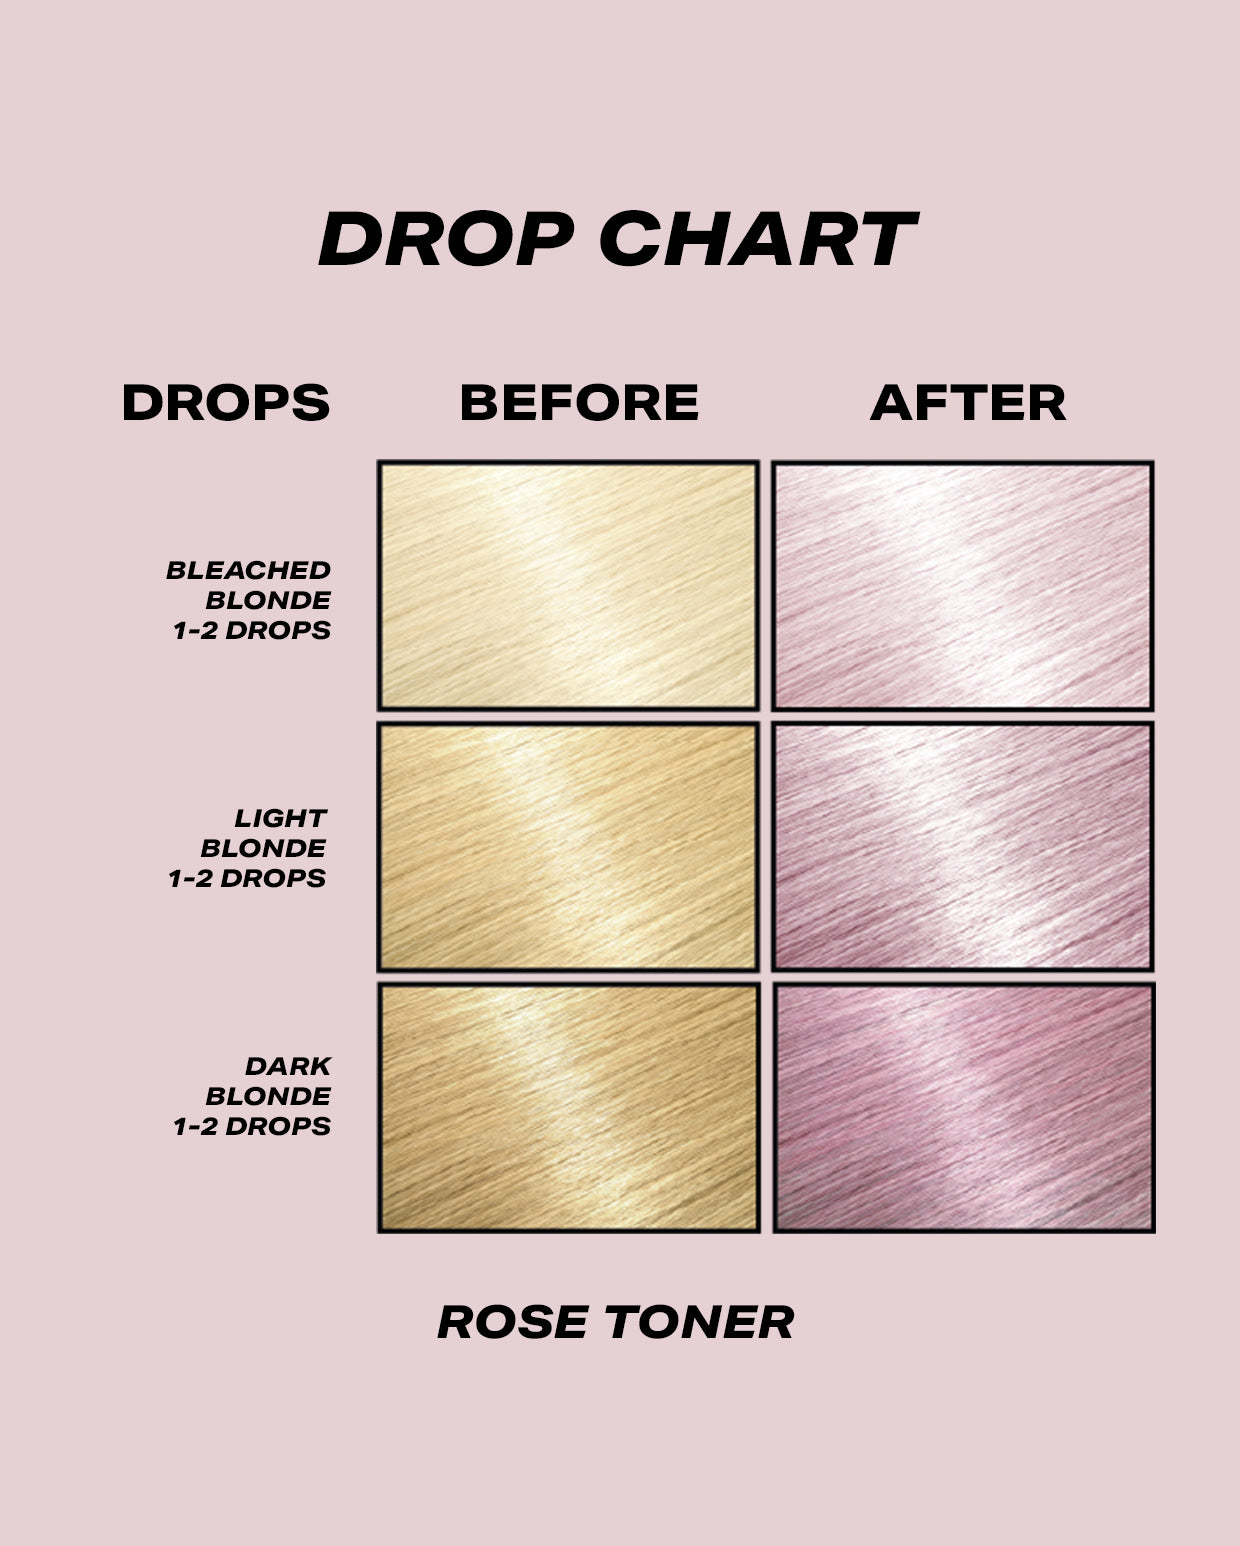 Rose Toner - DROP IT